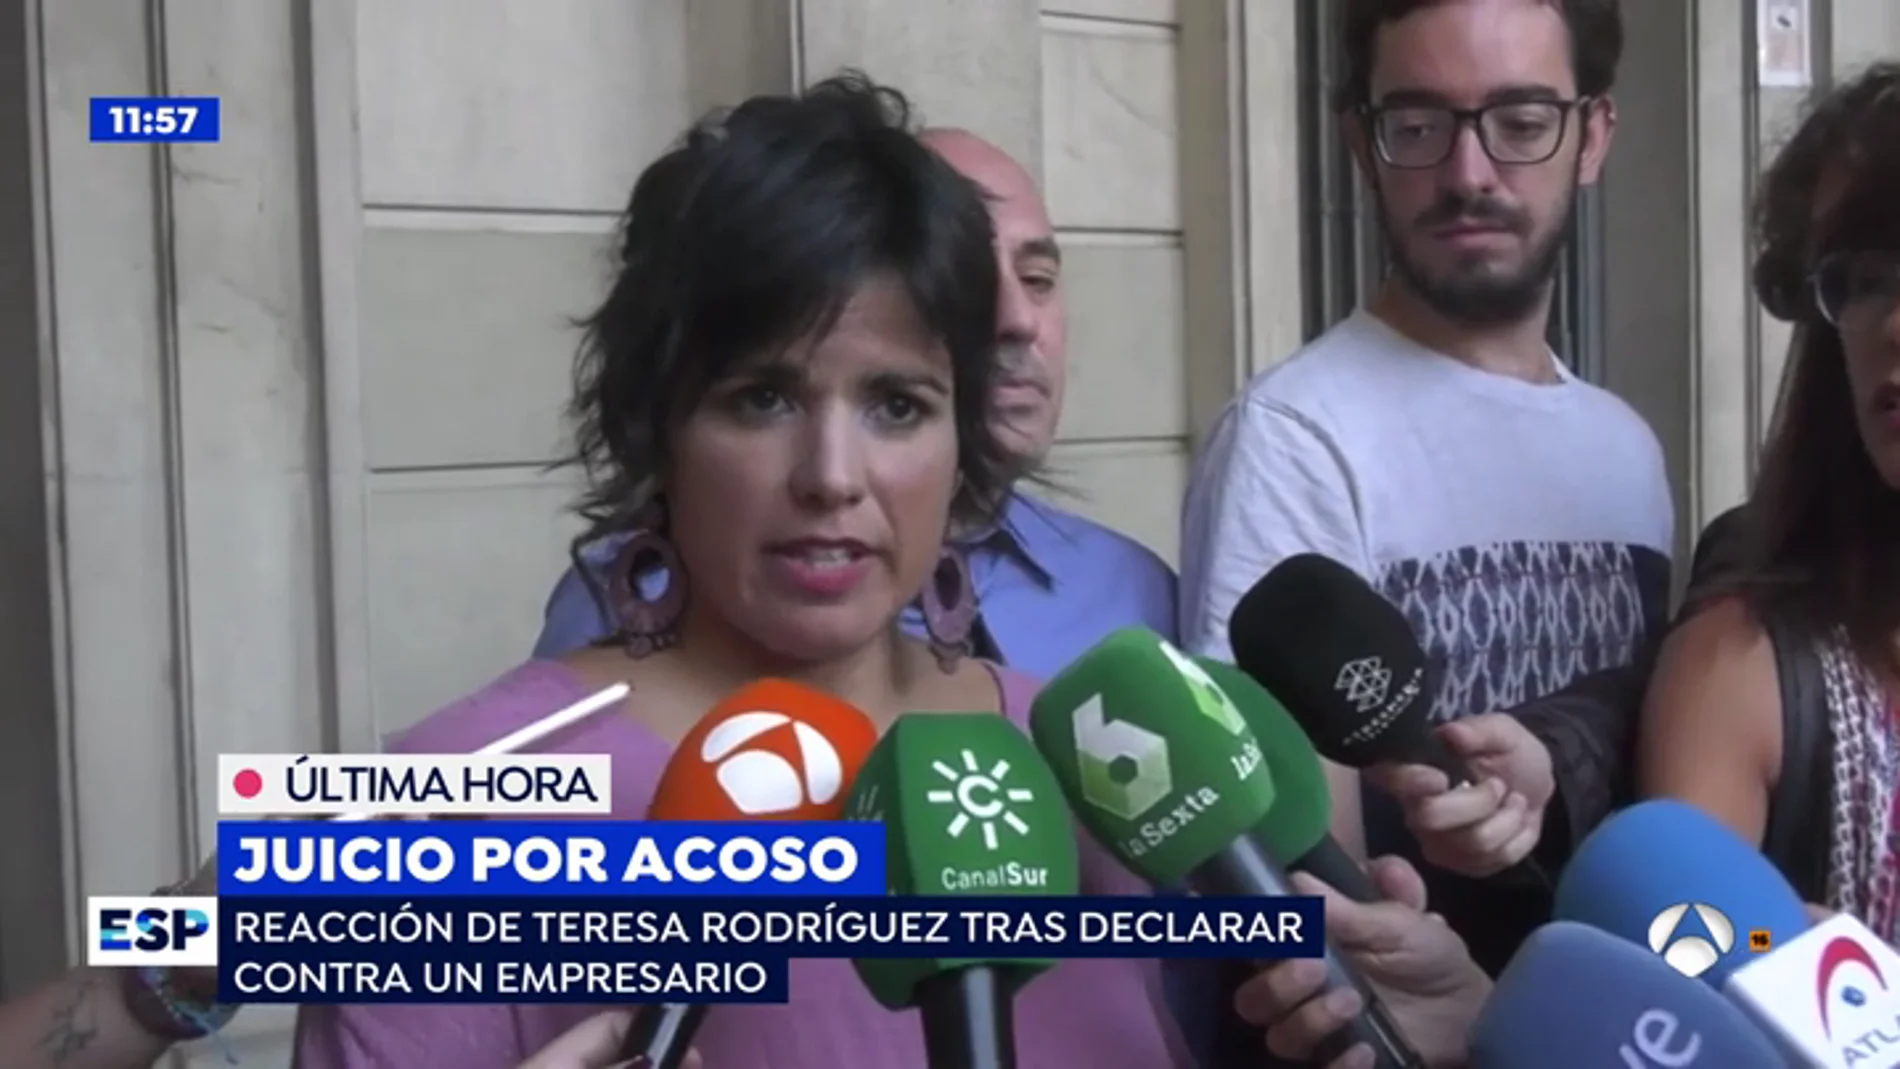 Teresa Rodríguez tras el juicio contra Medina: "me pareció una agresión en toda regla. Me sentí un objeto, sentí asco"